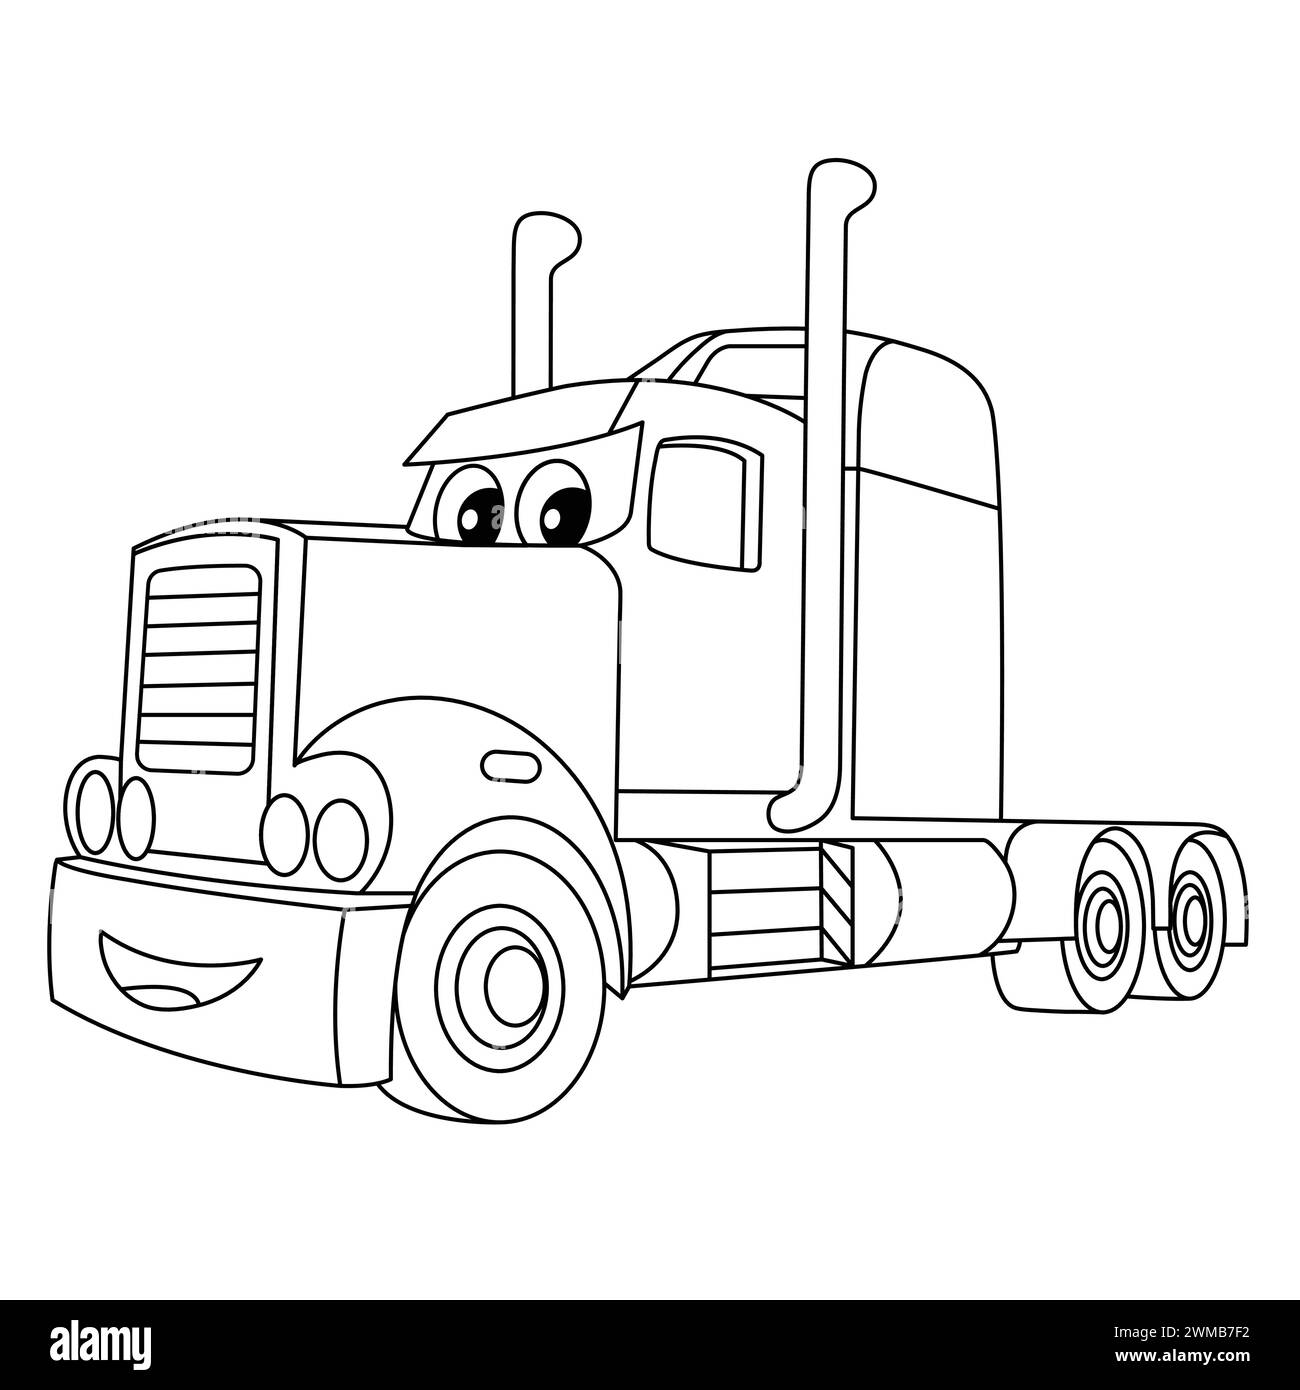 Smile Cartoon Truck para colorear página. Gran camión remolque ilustración vectorial. Vehículo pesado semi camión con cara divertida. Perfil del camión Ilustración del Vector